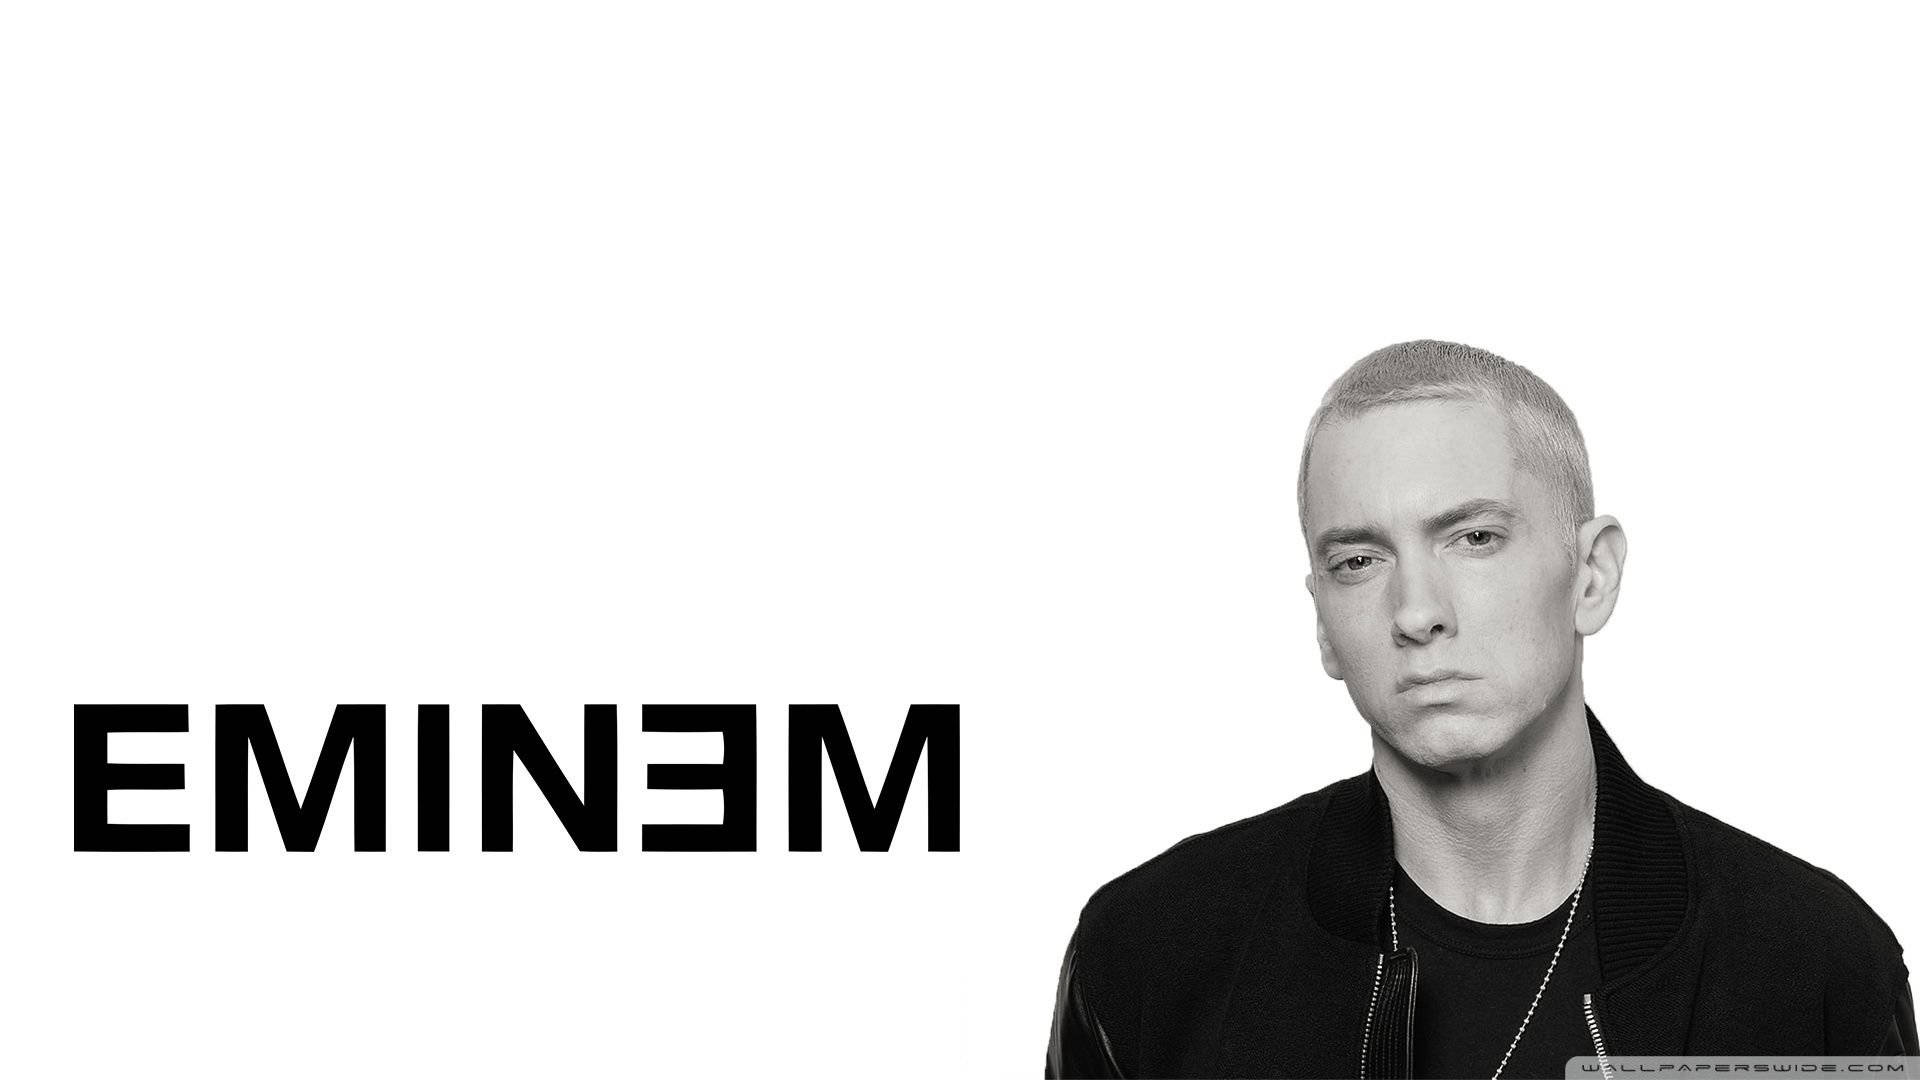 Eminem Background Photos